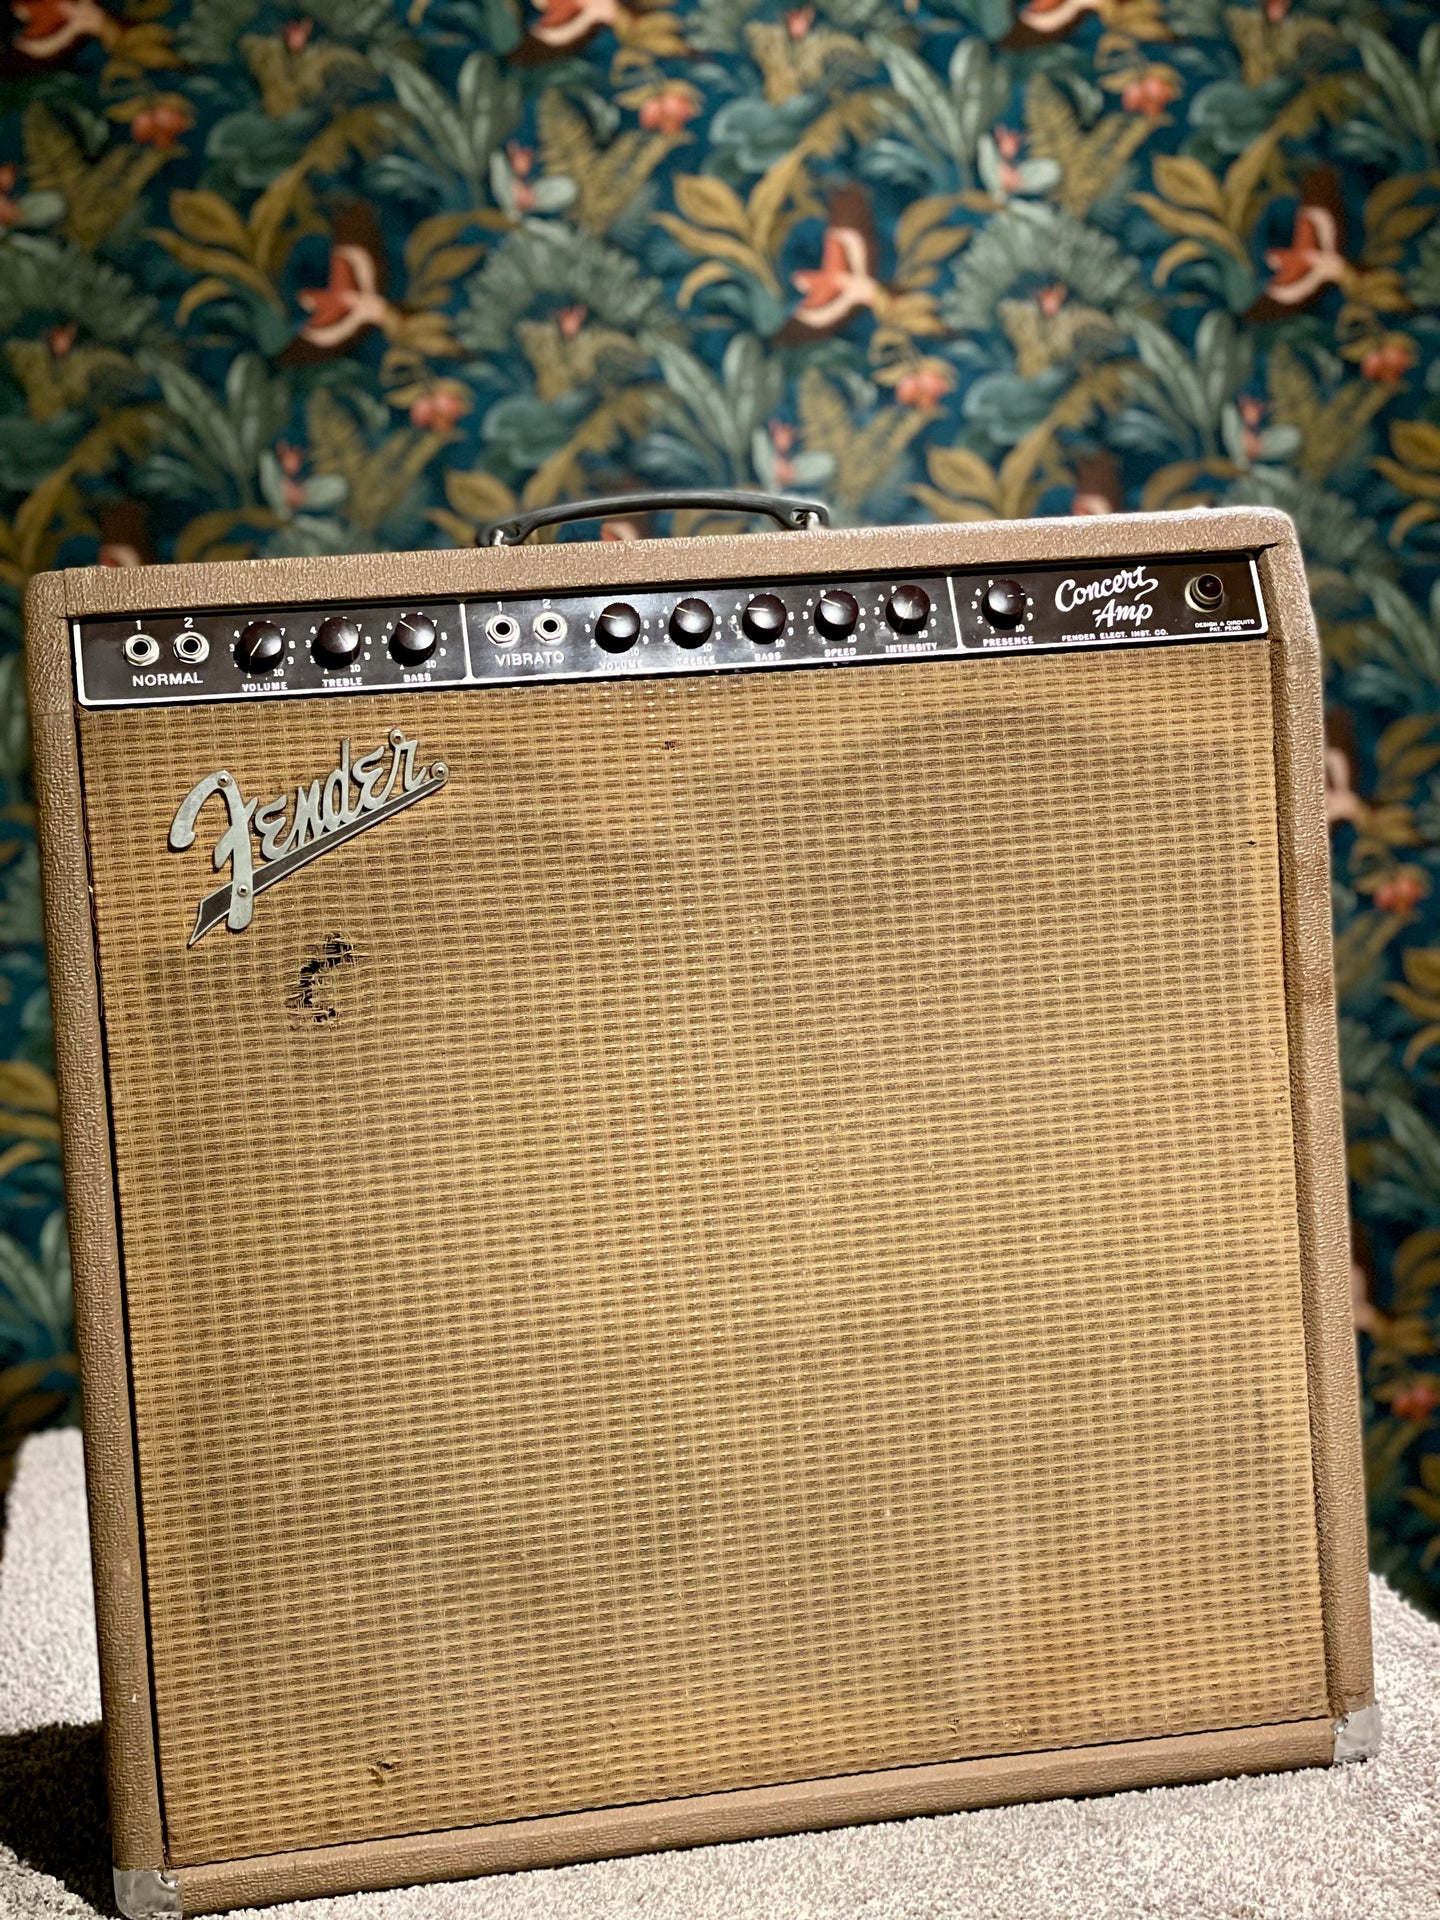 1962 Fender Concert amp